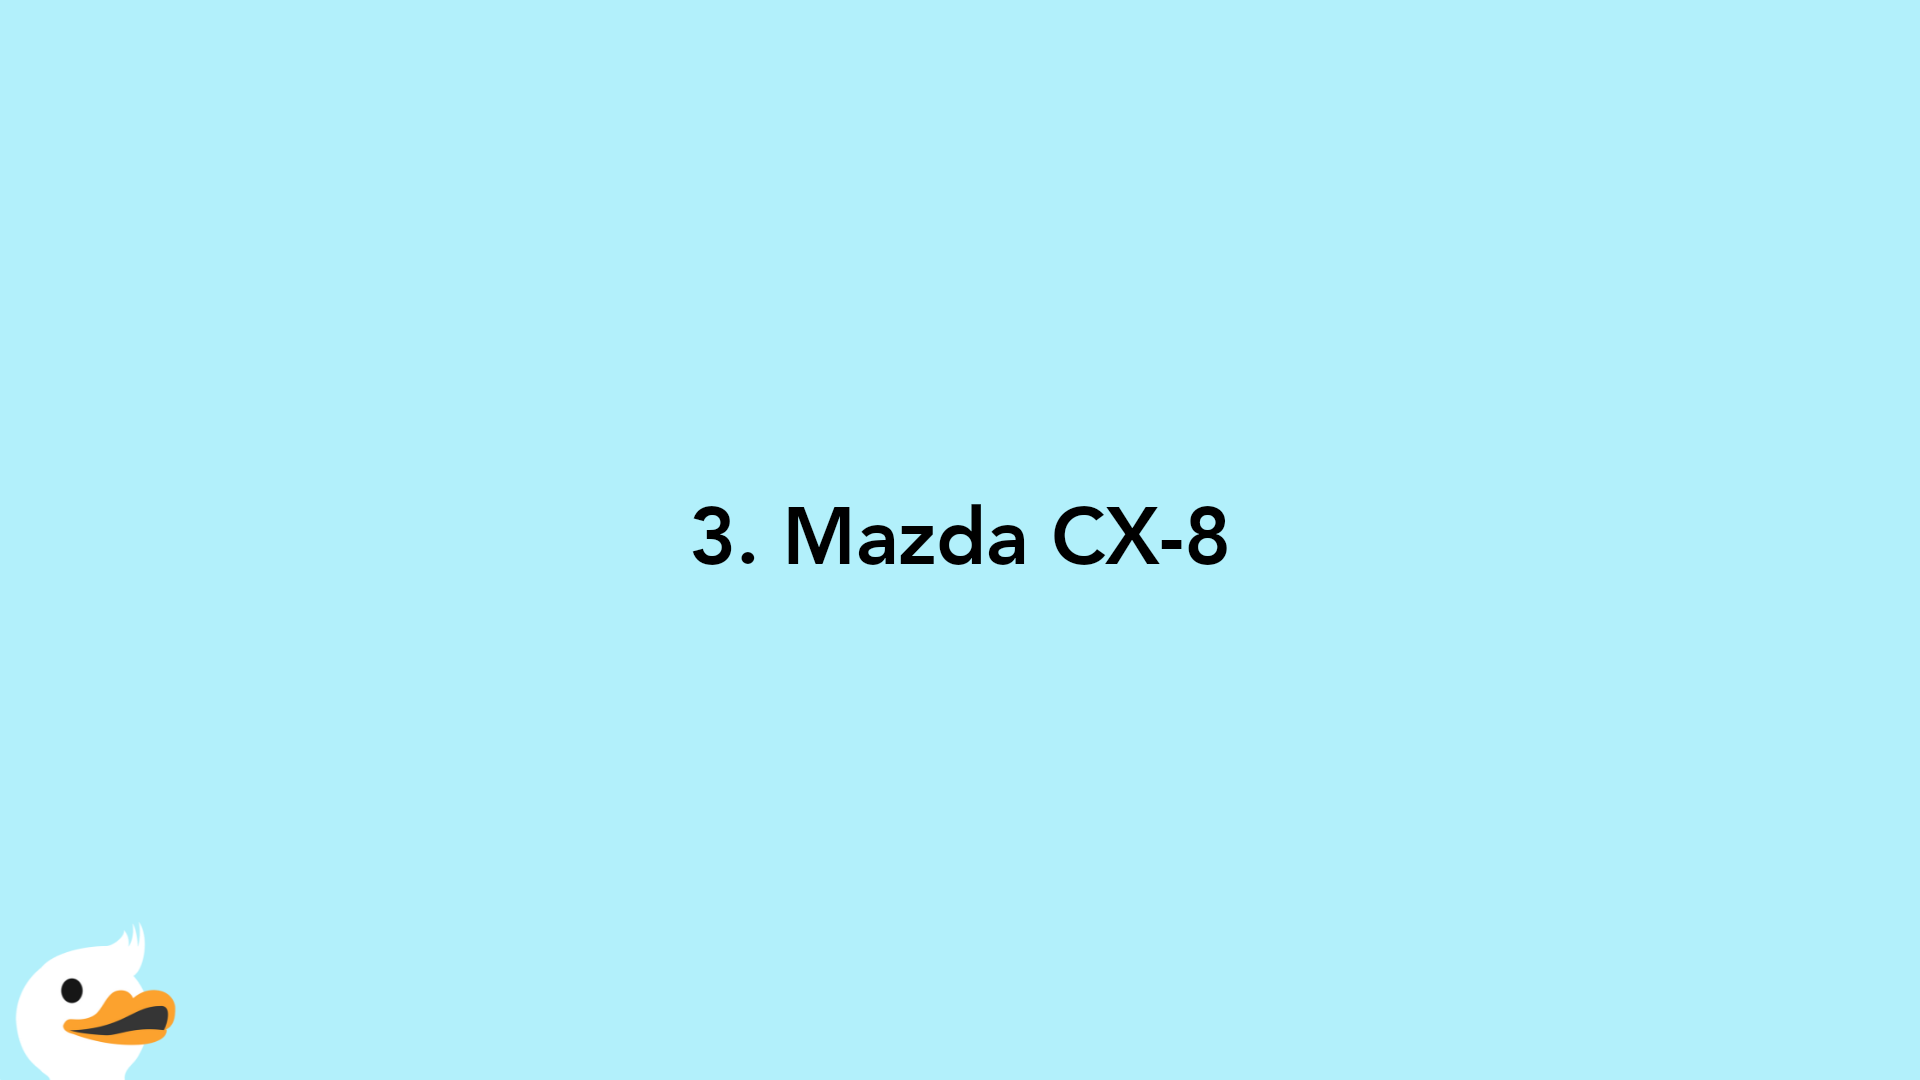 3. Mazda CX-8